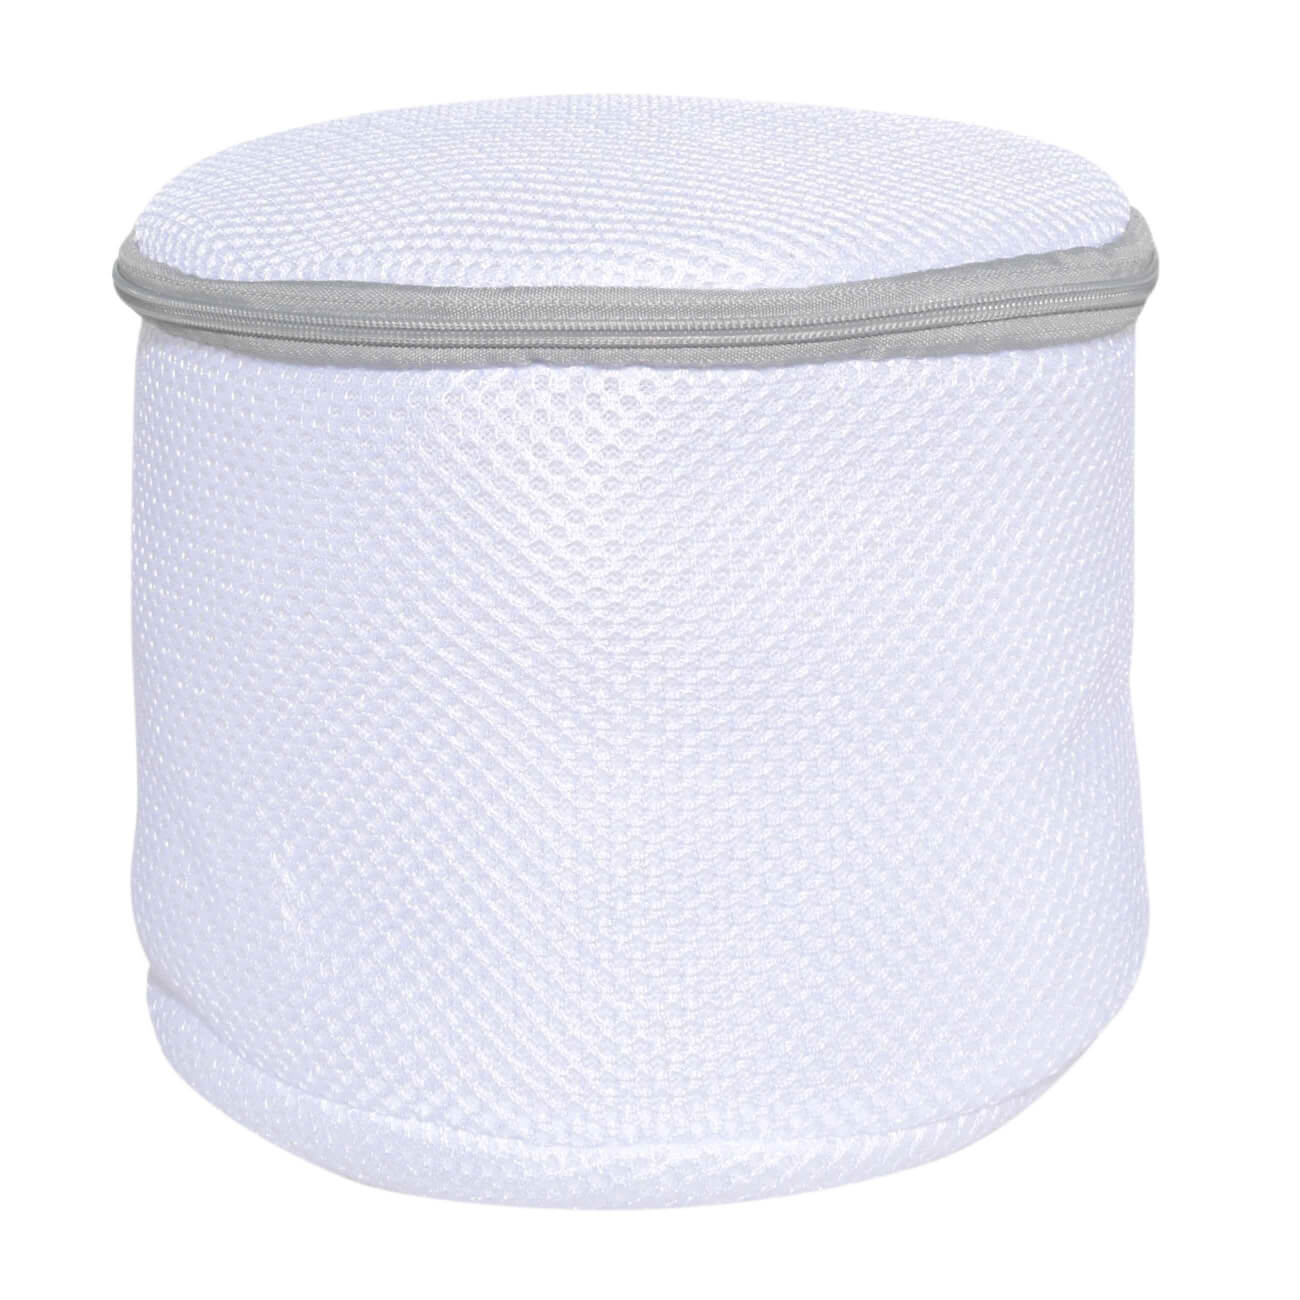 Мешок для стирки бюстгалтеров, 17х15 см, с защитой, полиэстер, бело-серый, Safety изображение № 1